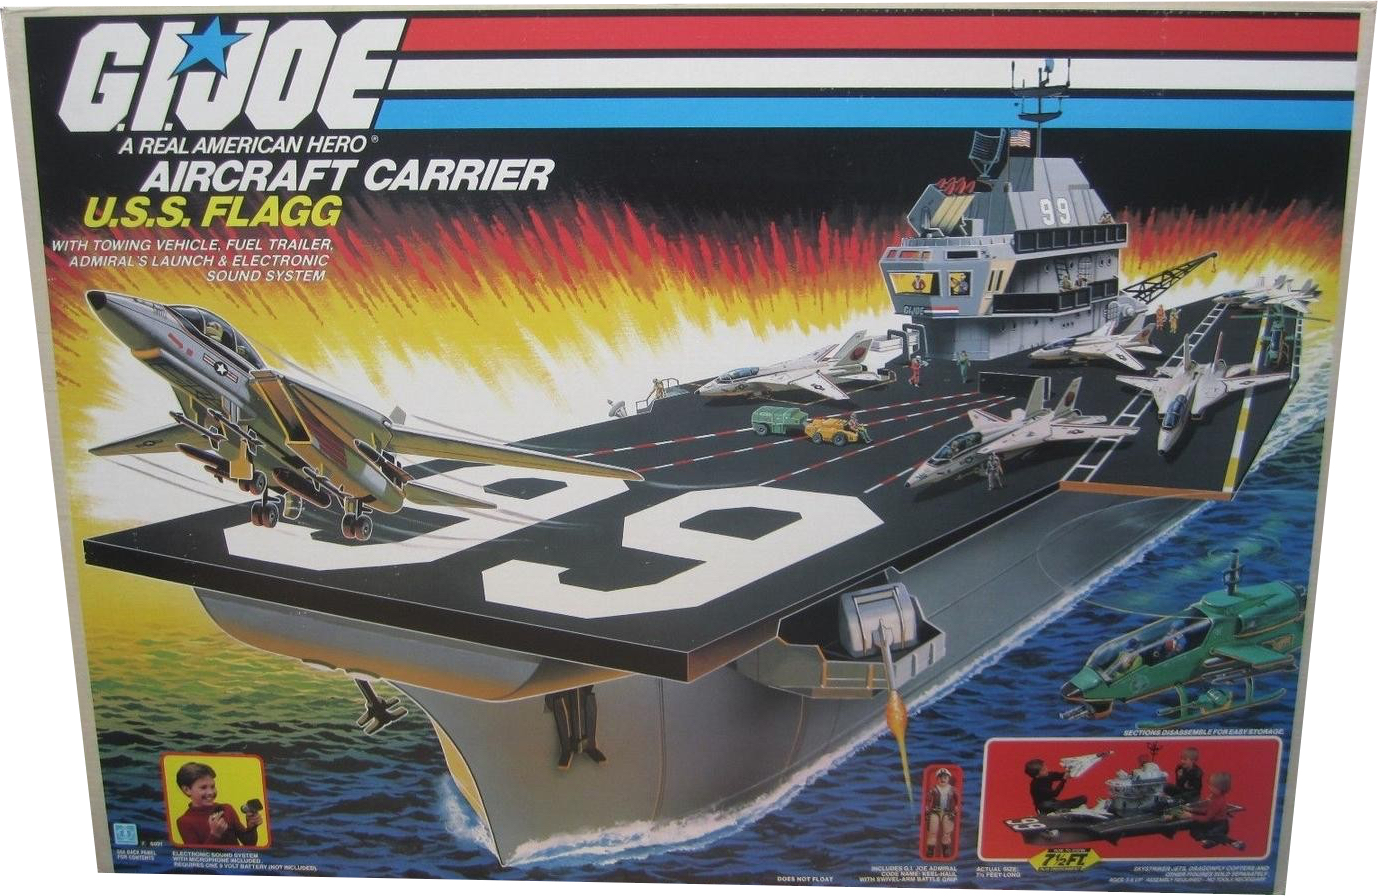 u-s-s-flagg-aircraft-carrier-2362.jpg